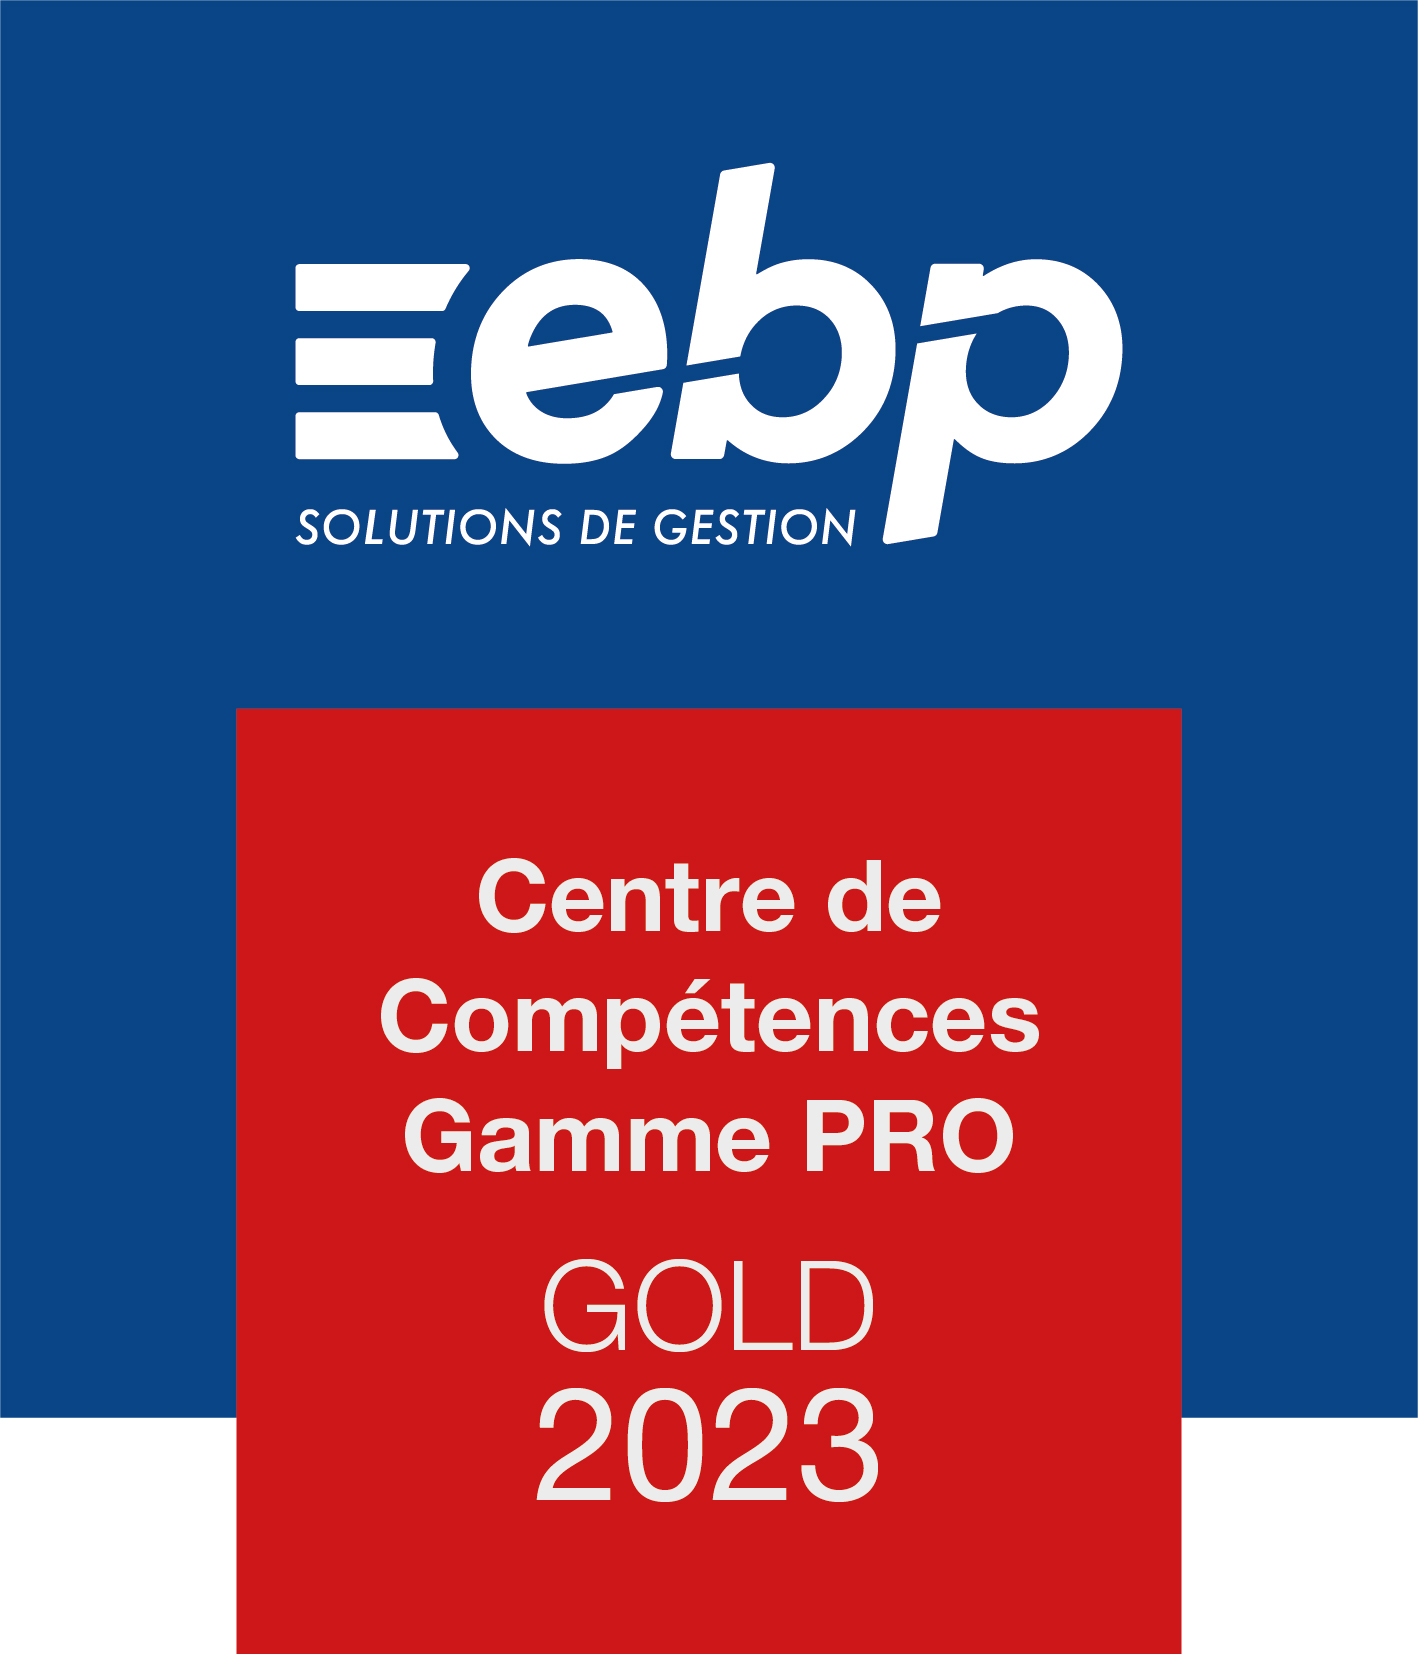 Centre de compétence Gamme PRO GOLD 2023 - Logiciel EBP, ACE distributeur revendeur certifié centre expert Gold 974 